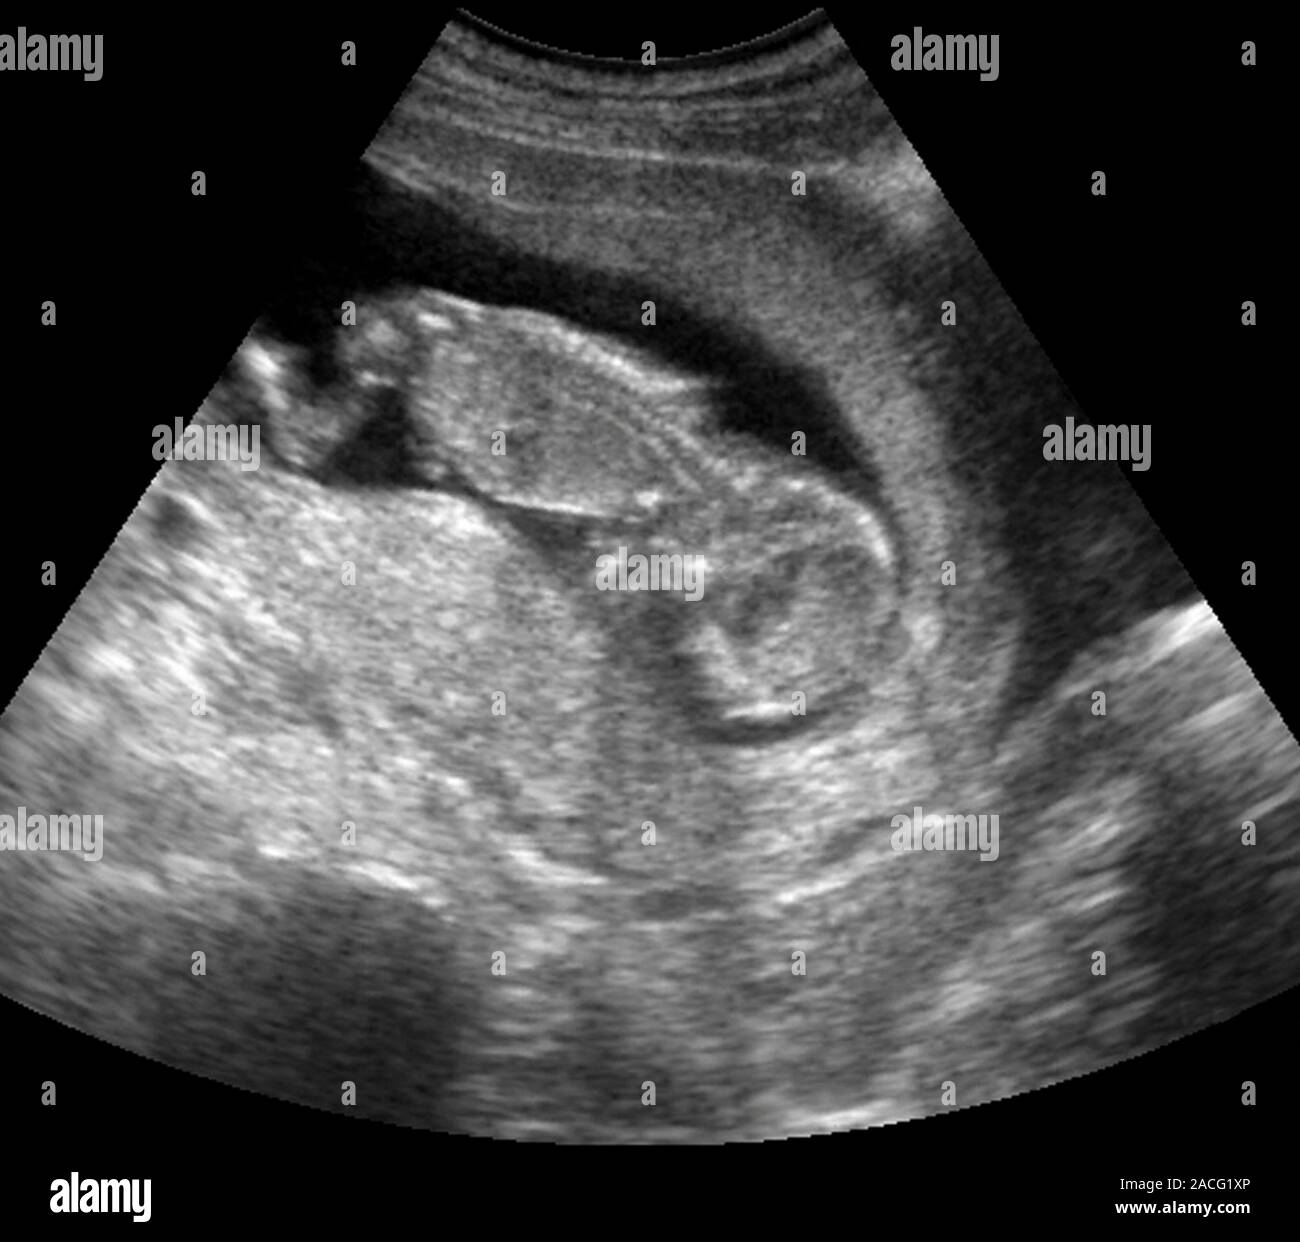 Что происходит на 12 неделе. 12 Недель беременности фото плода на УЗИ. Снимки УЗИ беременности 12 недель. УЗИ малыша на 12 неделе беременности фото.